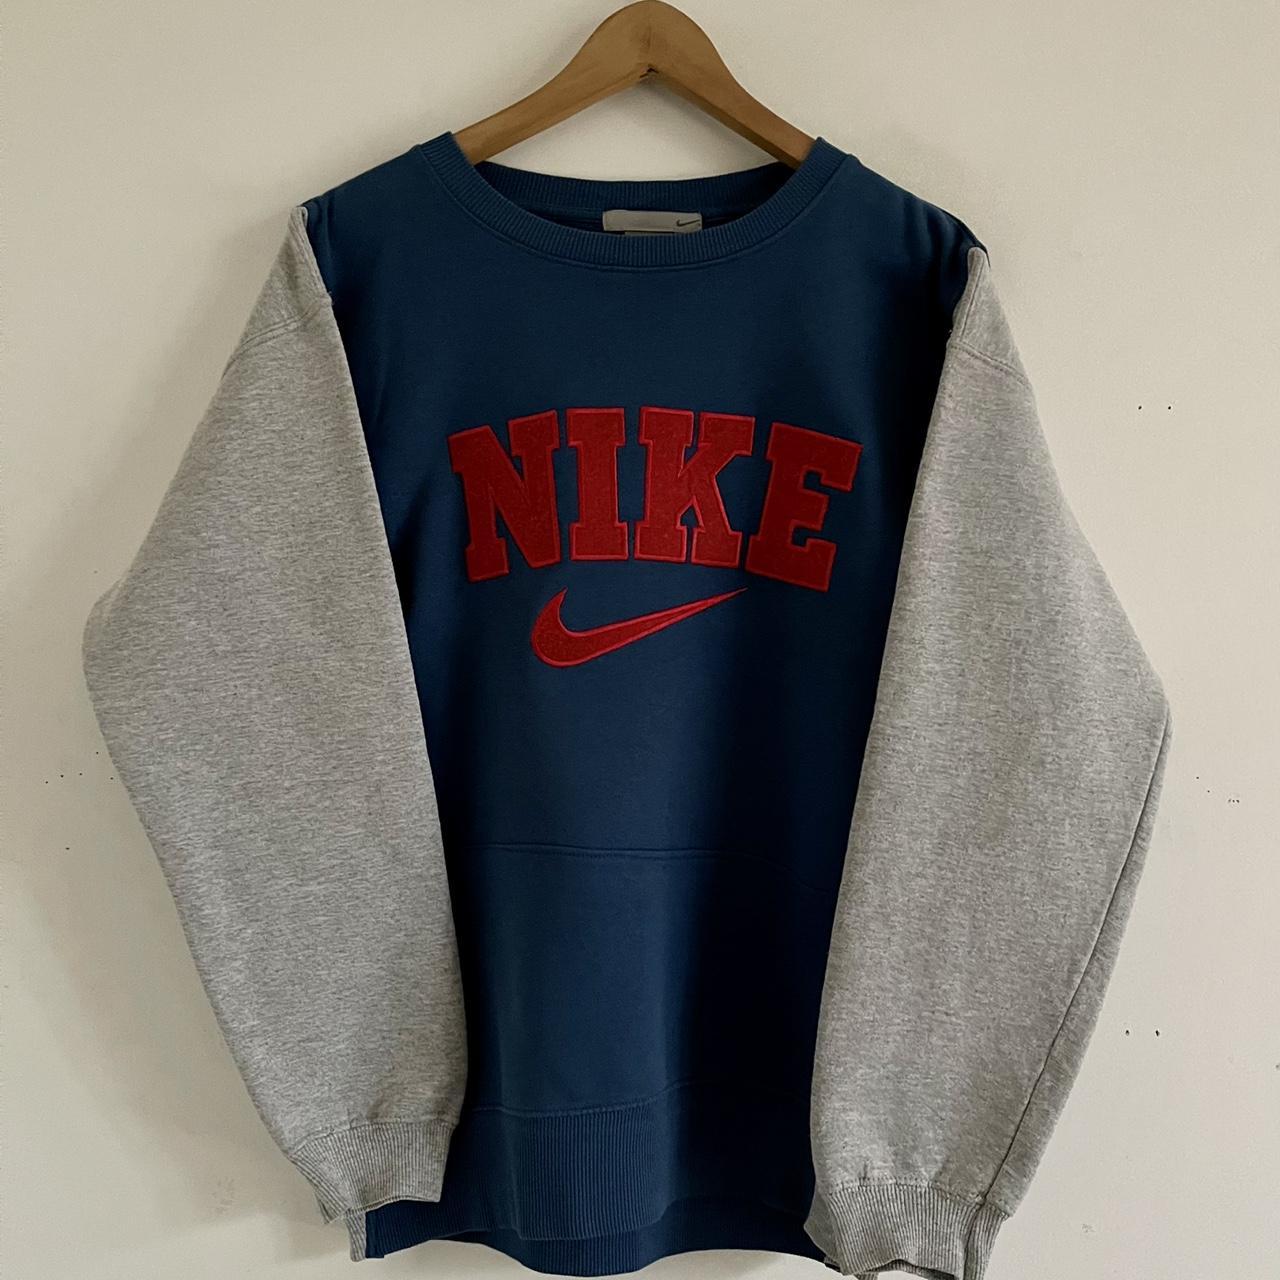 Model: Nike Rework Sweatshirt / Pullover Colors:... - Depop